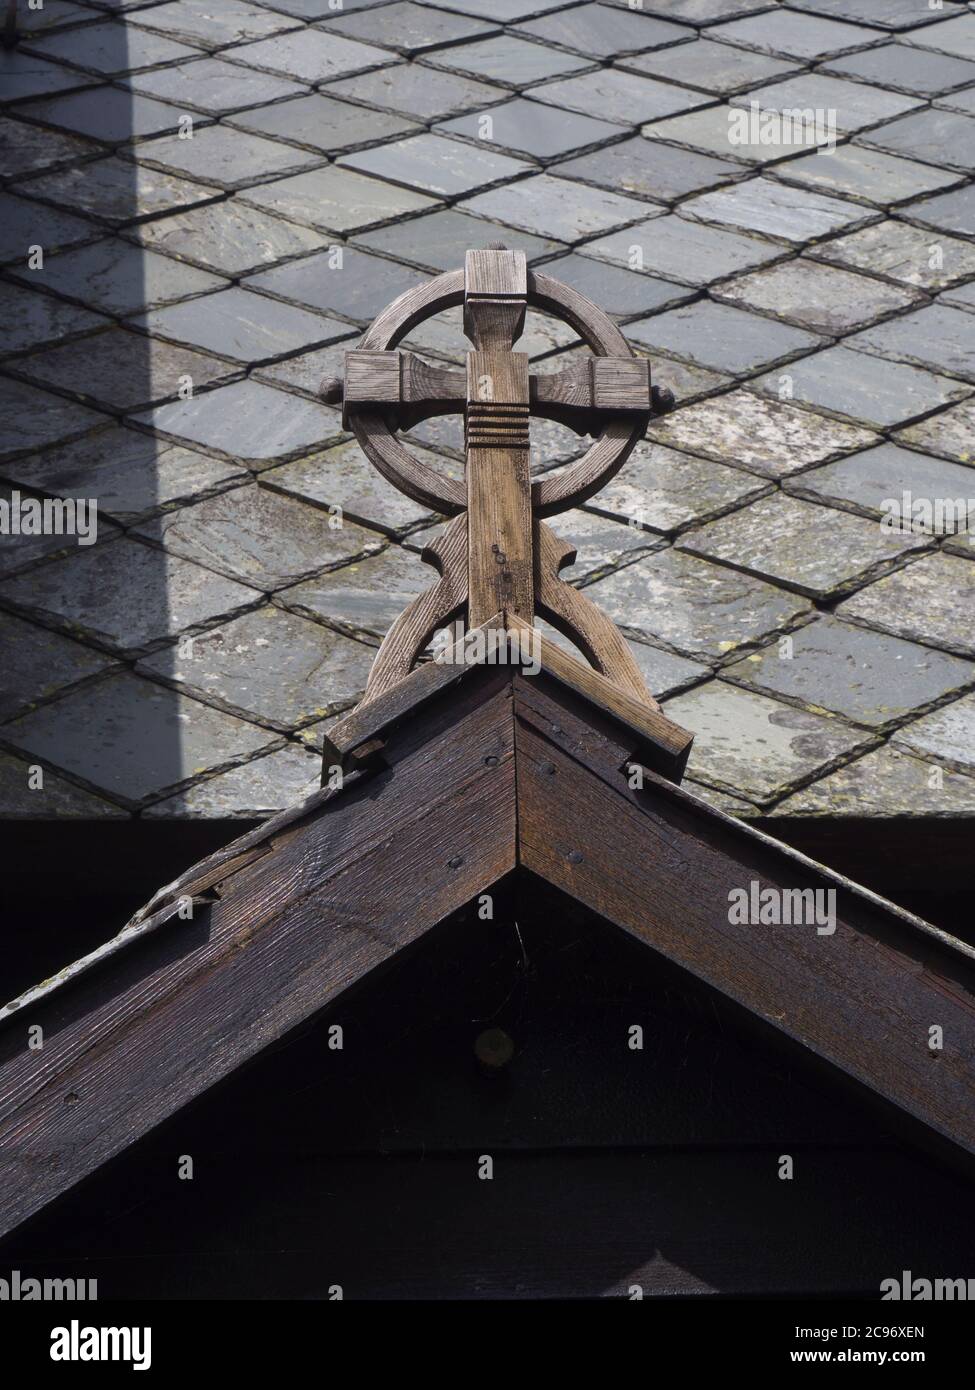 Røldal Stave Iglesia dic en un valle en el oeste de Noruega que data de ca 1250, detalle de fachada ornamental cruz y techo de pizarra Foto de stock